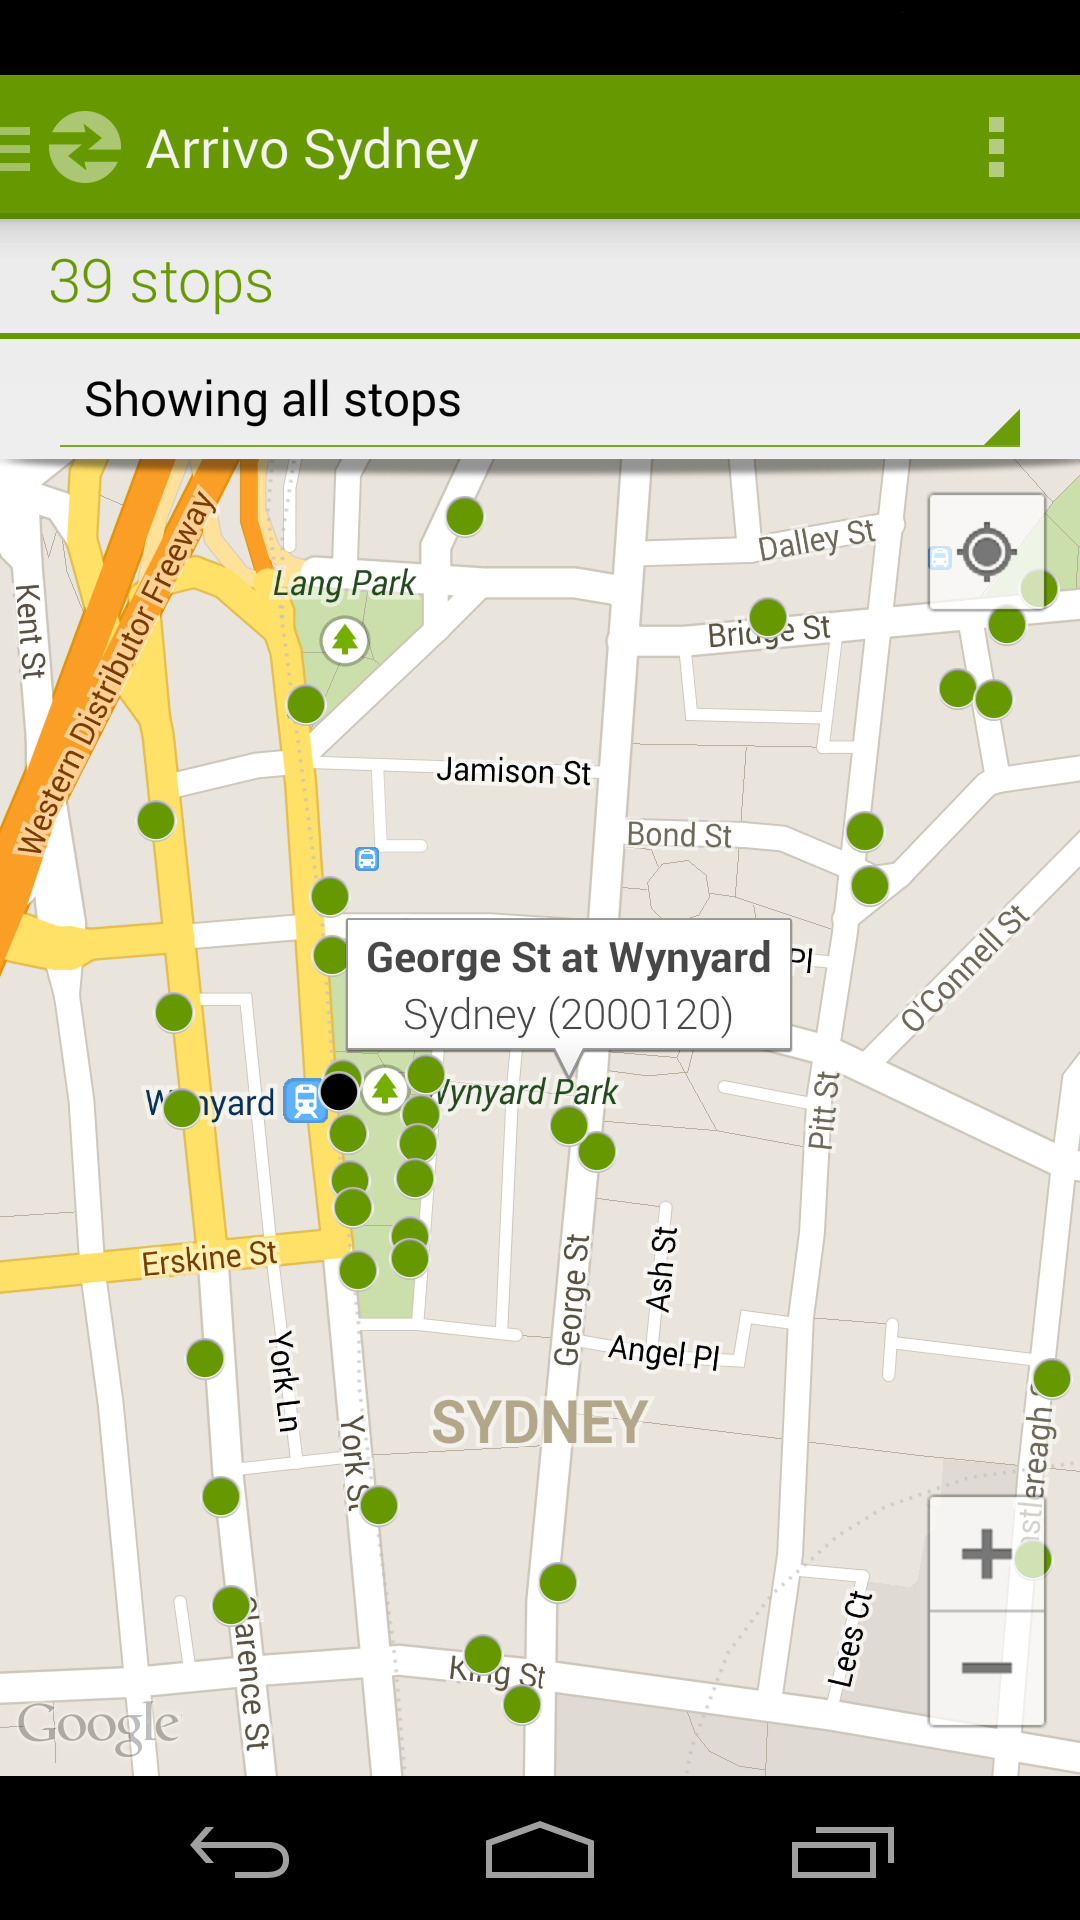 Android application Arrivo Sydney Transit App screenshort